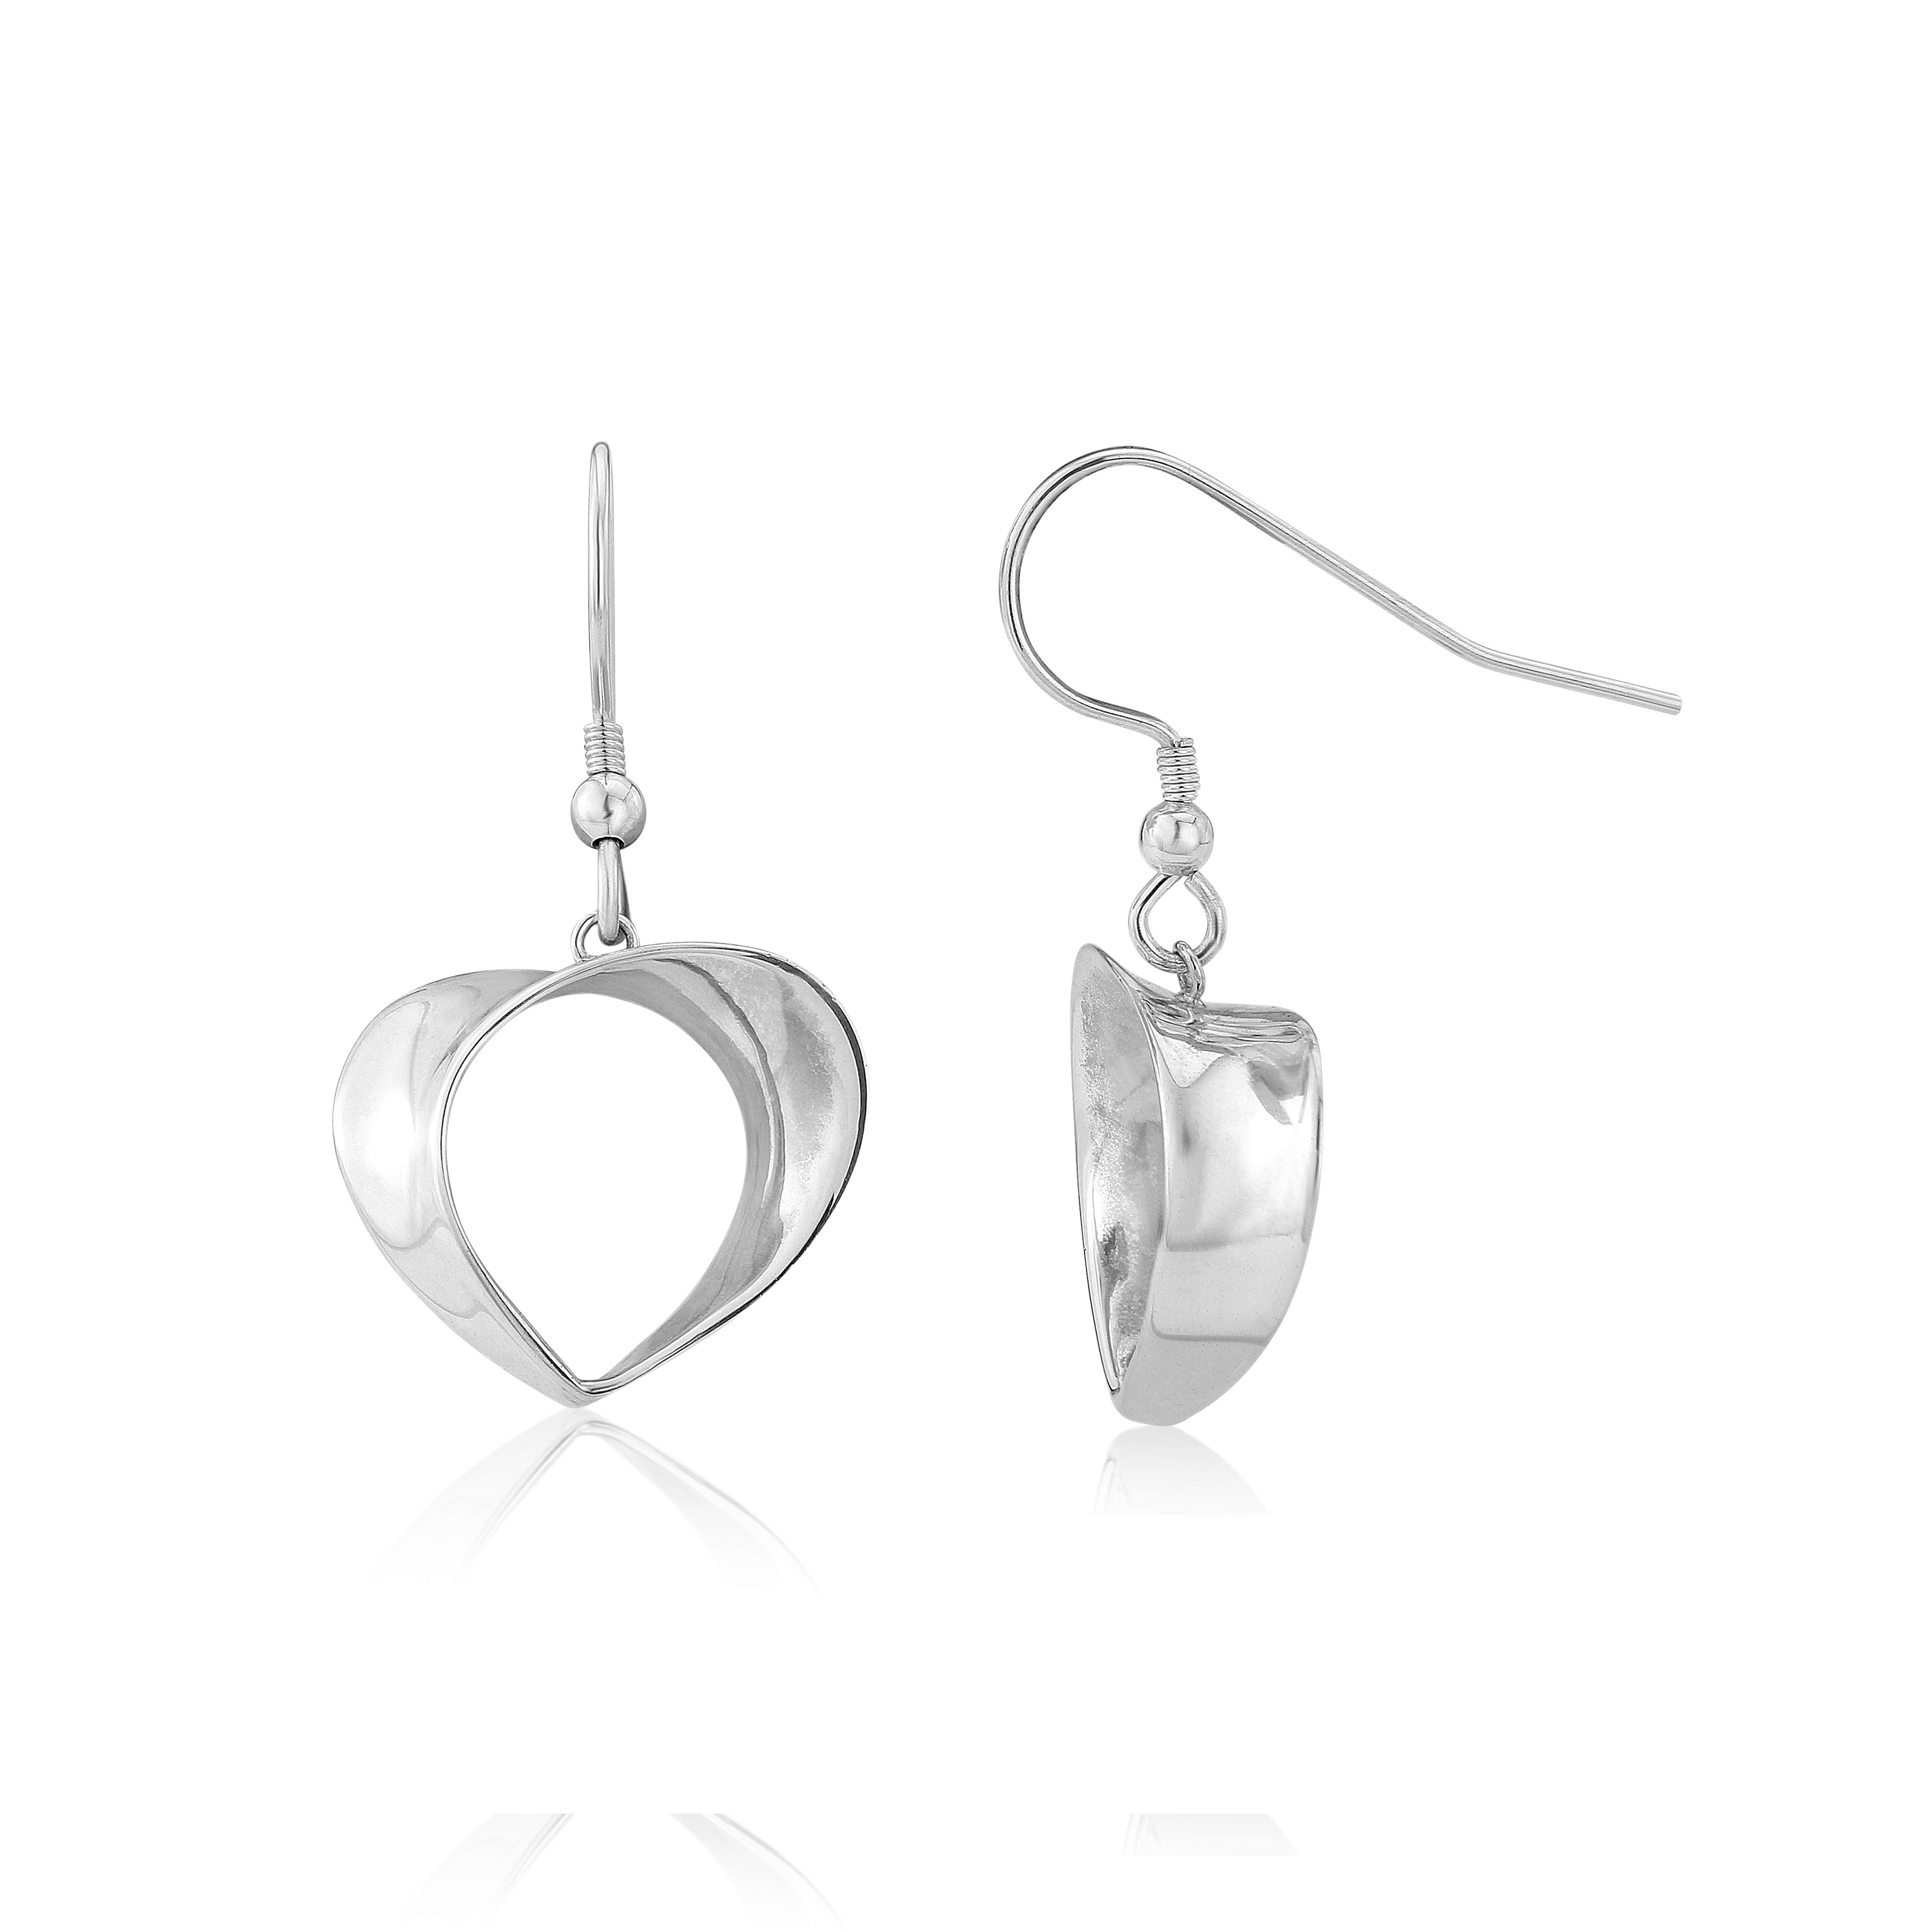 Handcrafted Silver Heart Drop Earrings